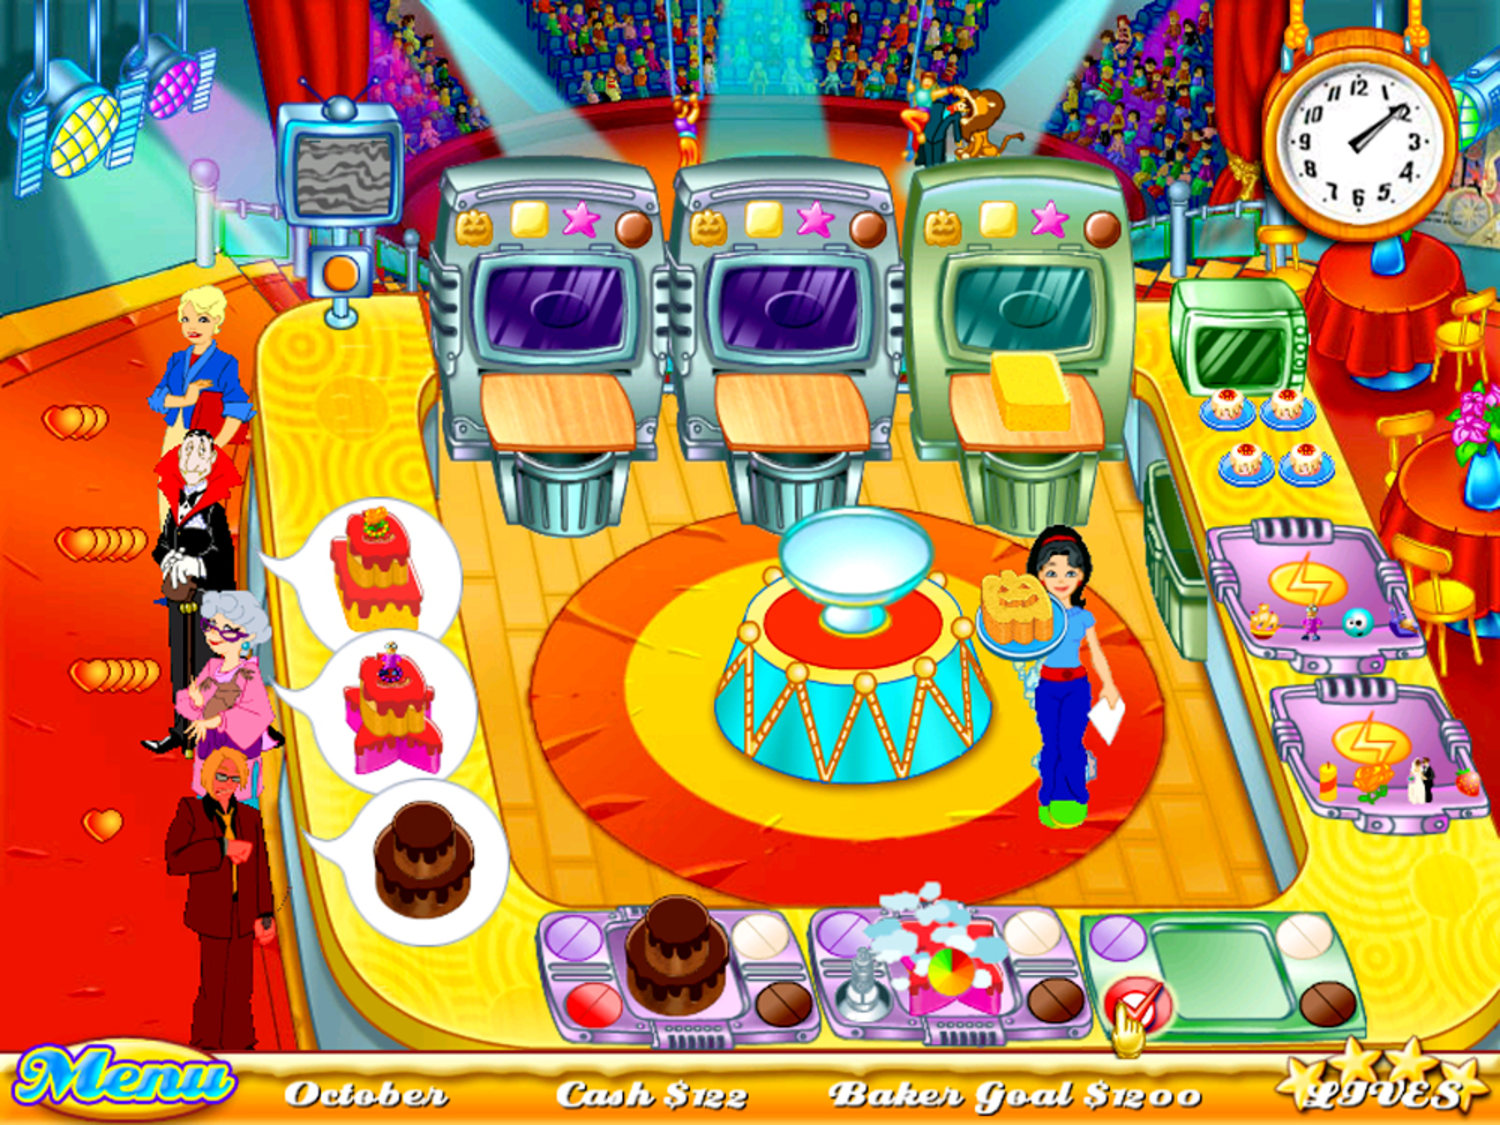 Cake Mania Main Street PC Game - Free Download Full Version